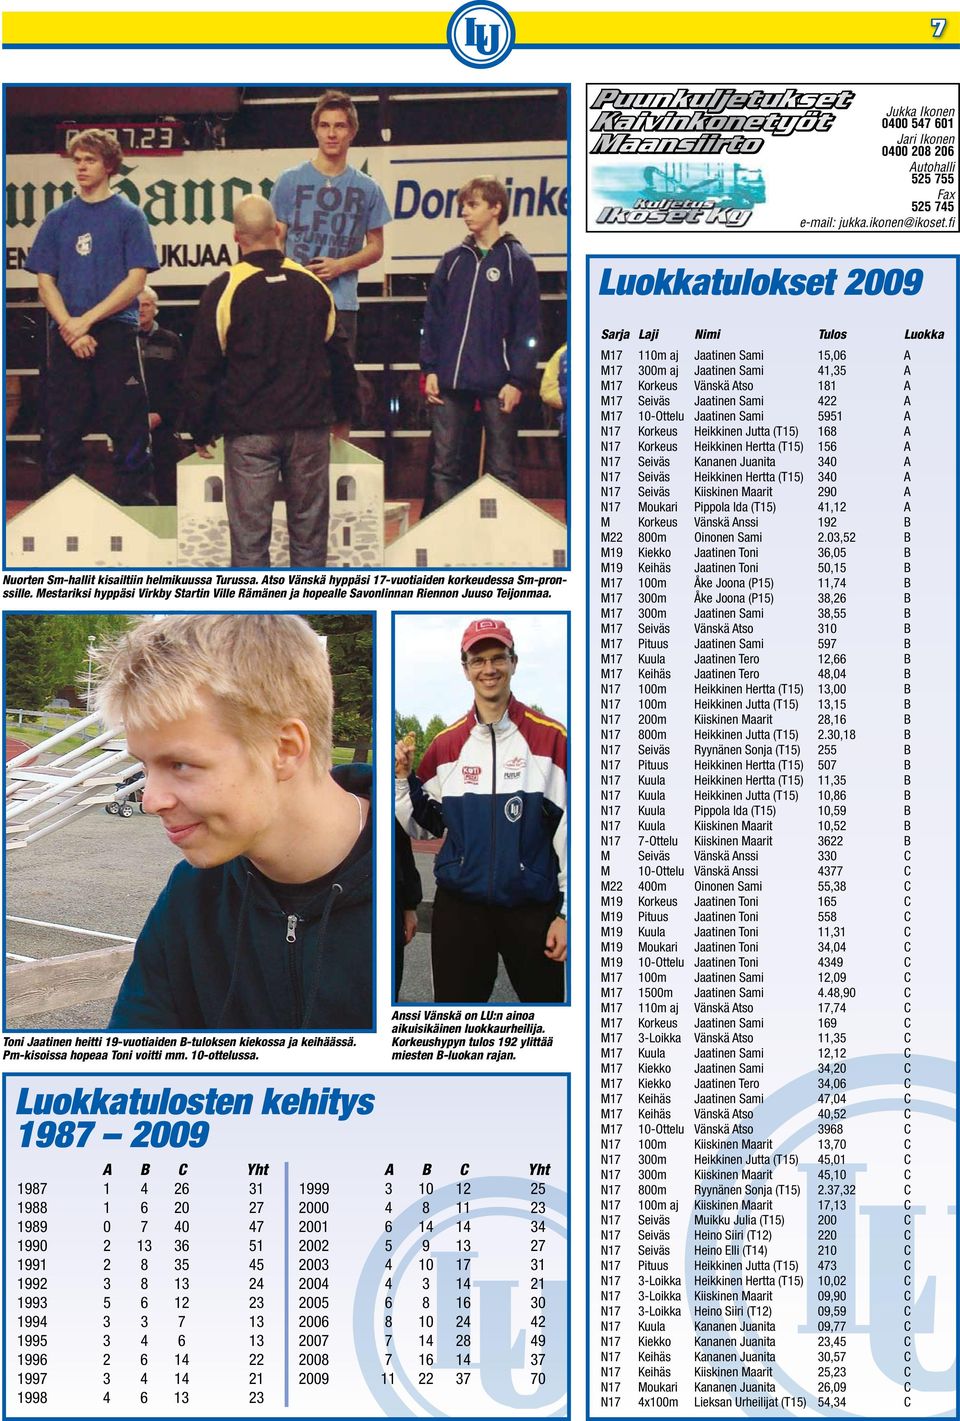 Mestariksi hyppäsi Virkby Startin Ville Rämänen ja hopealle Savonlinnan Riennon Juuso Teijonmaa. Toni Jaatinen heitti 19-vuotiaiden B-tuloksen kiekossa ja keihäässä. Pm-kisoissa hopeaa Toni voitti mm.